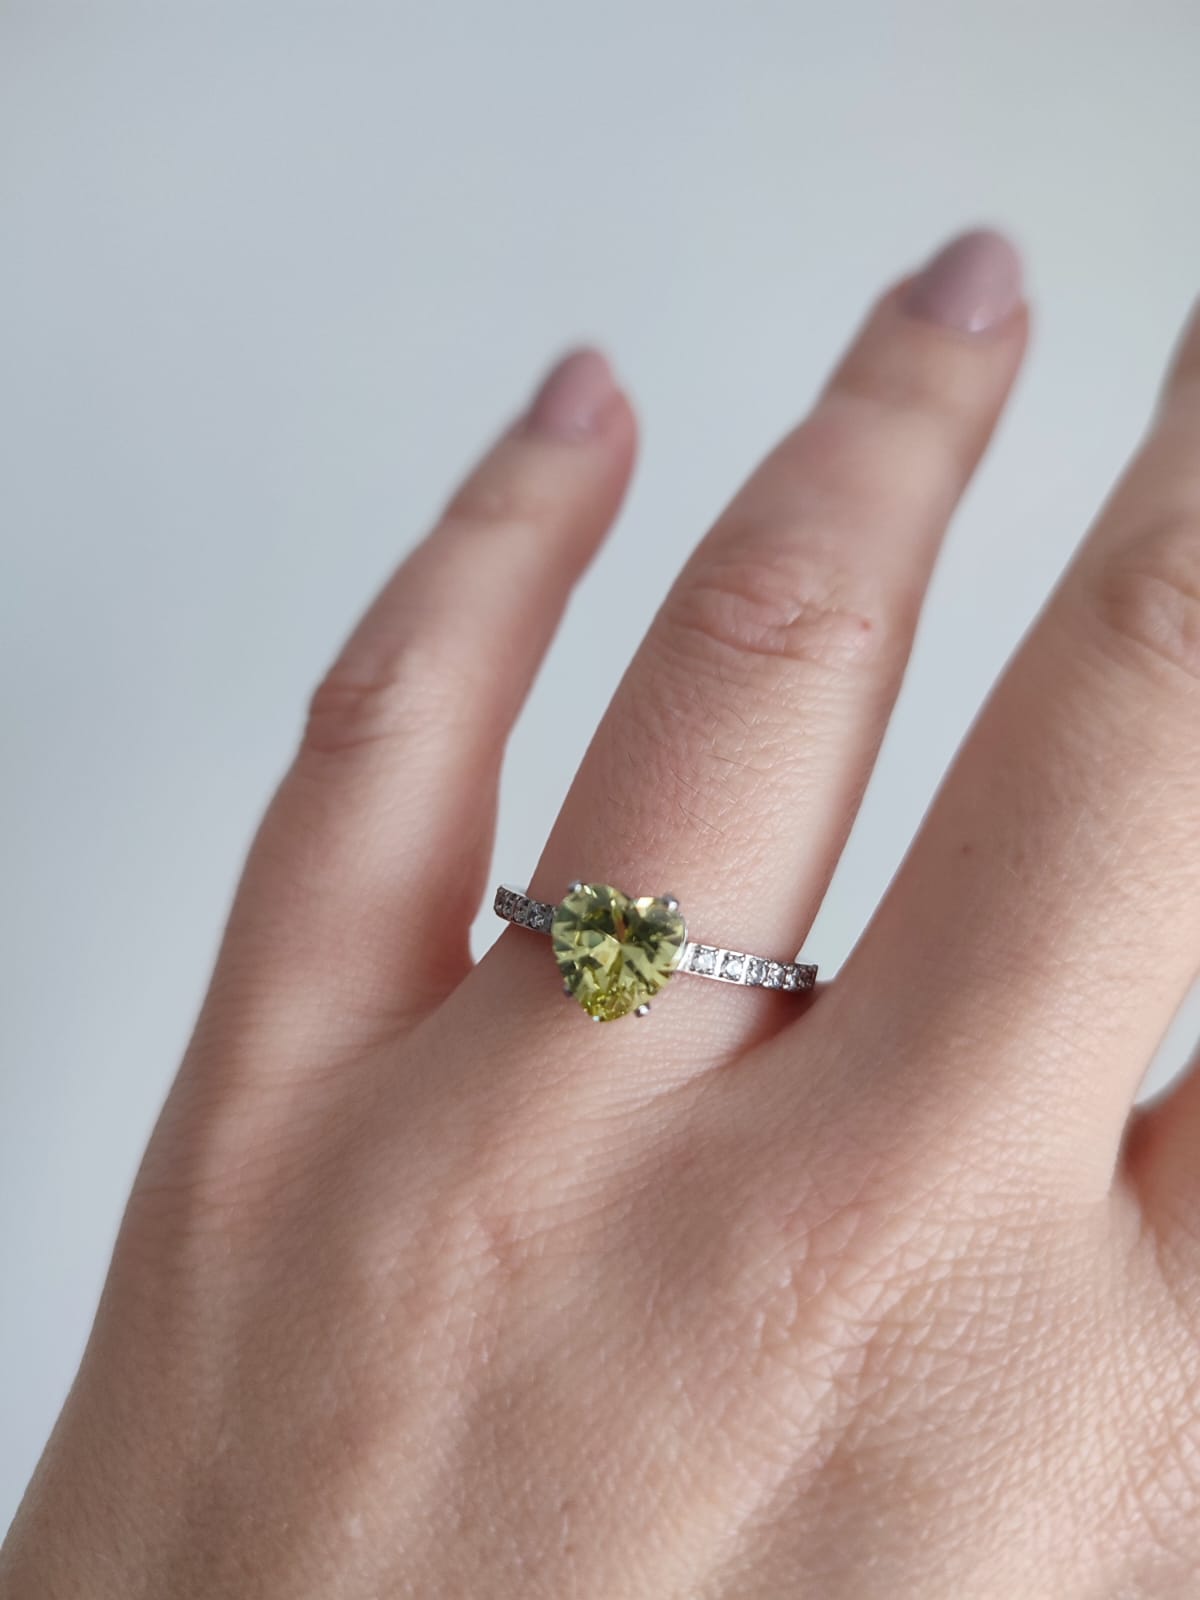 Anel em aço com zirconias transparentes em parte do anel e pedra em forma de coração na cor verde